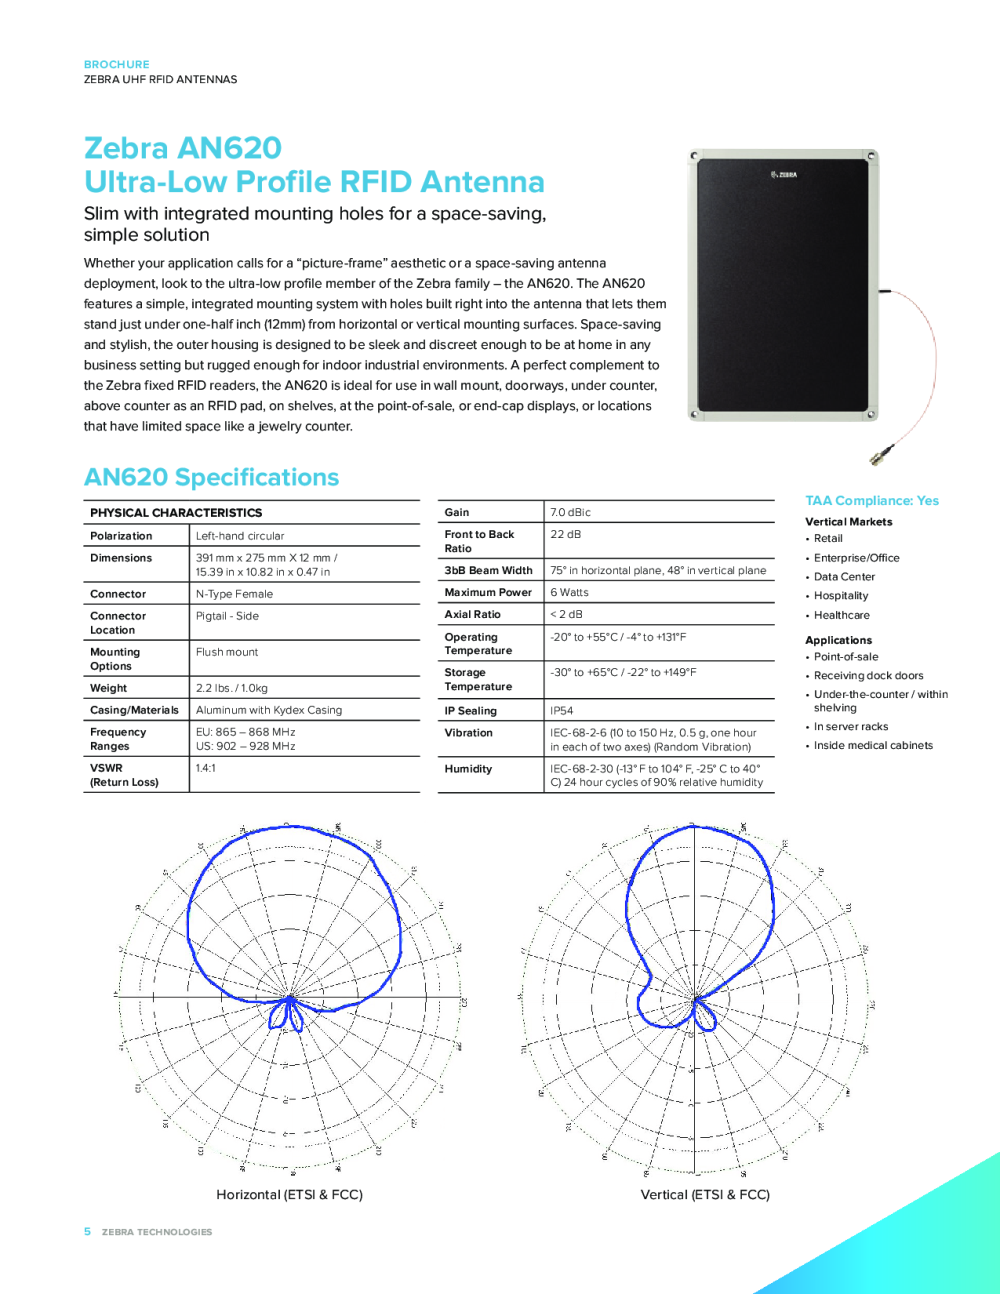 ZEBRA斑马AN440 RFID天线 斑马天线 双单元 RFID固定式读写器天线图片